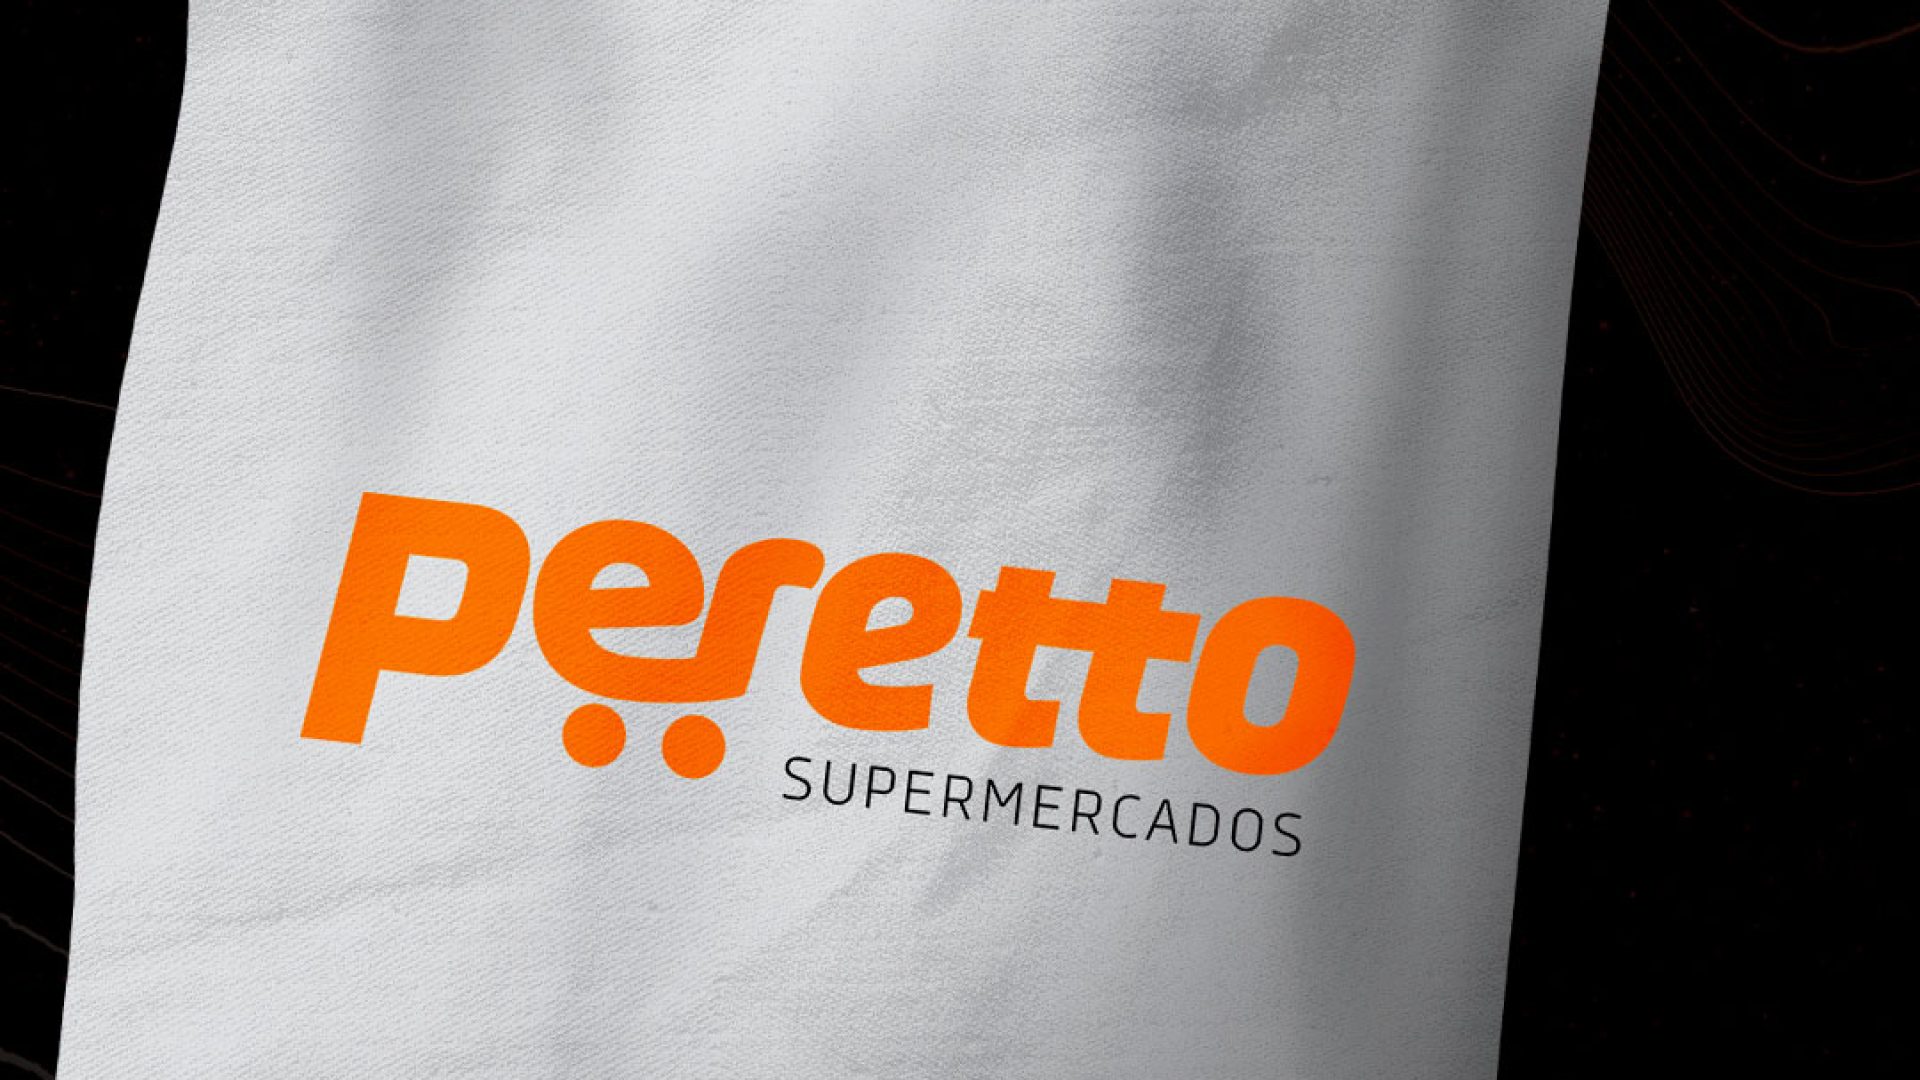 Peretto – 01